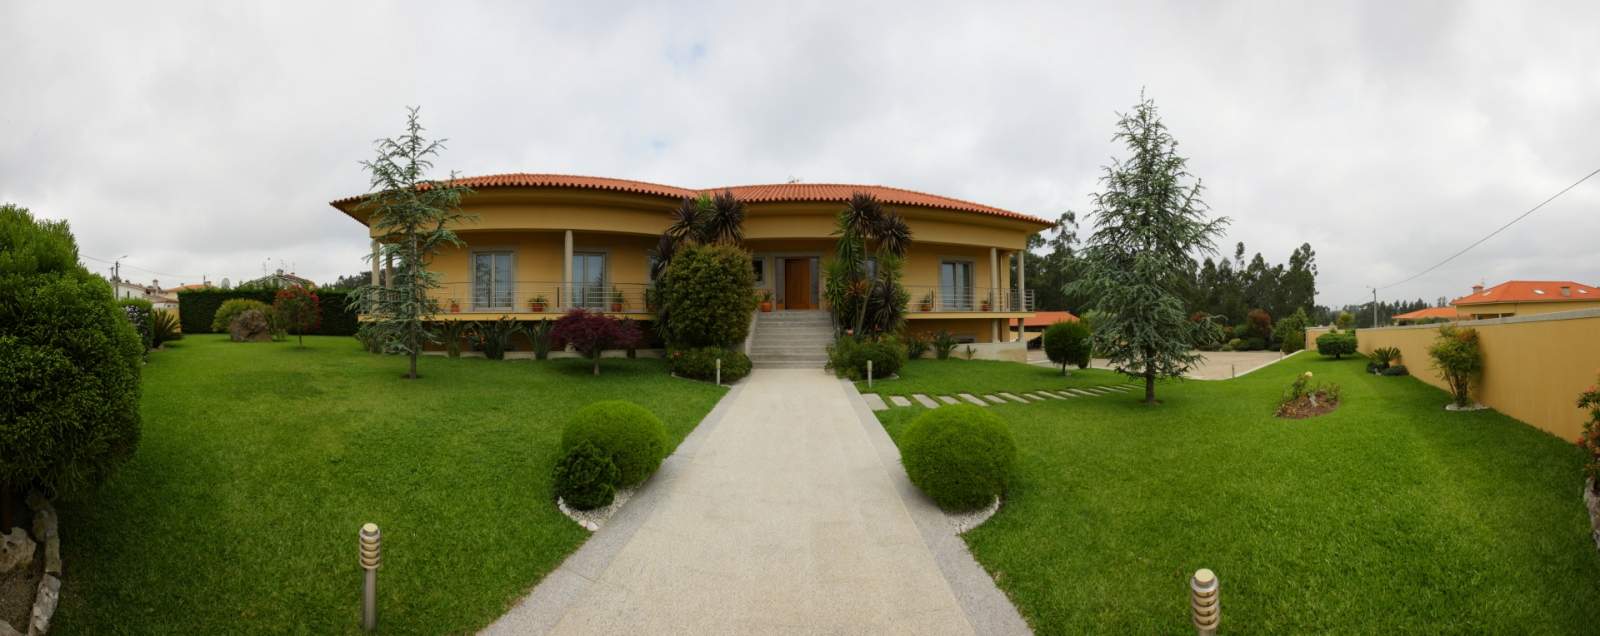 Villa mit Pool und Garten, zu verkaufen, in Póvoa de Varzim, Portugal_22662